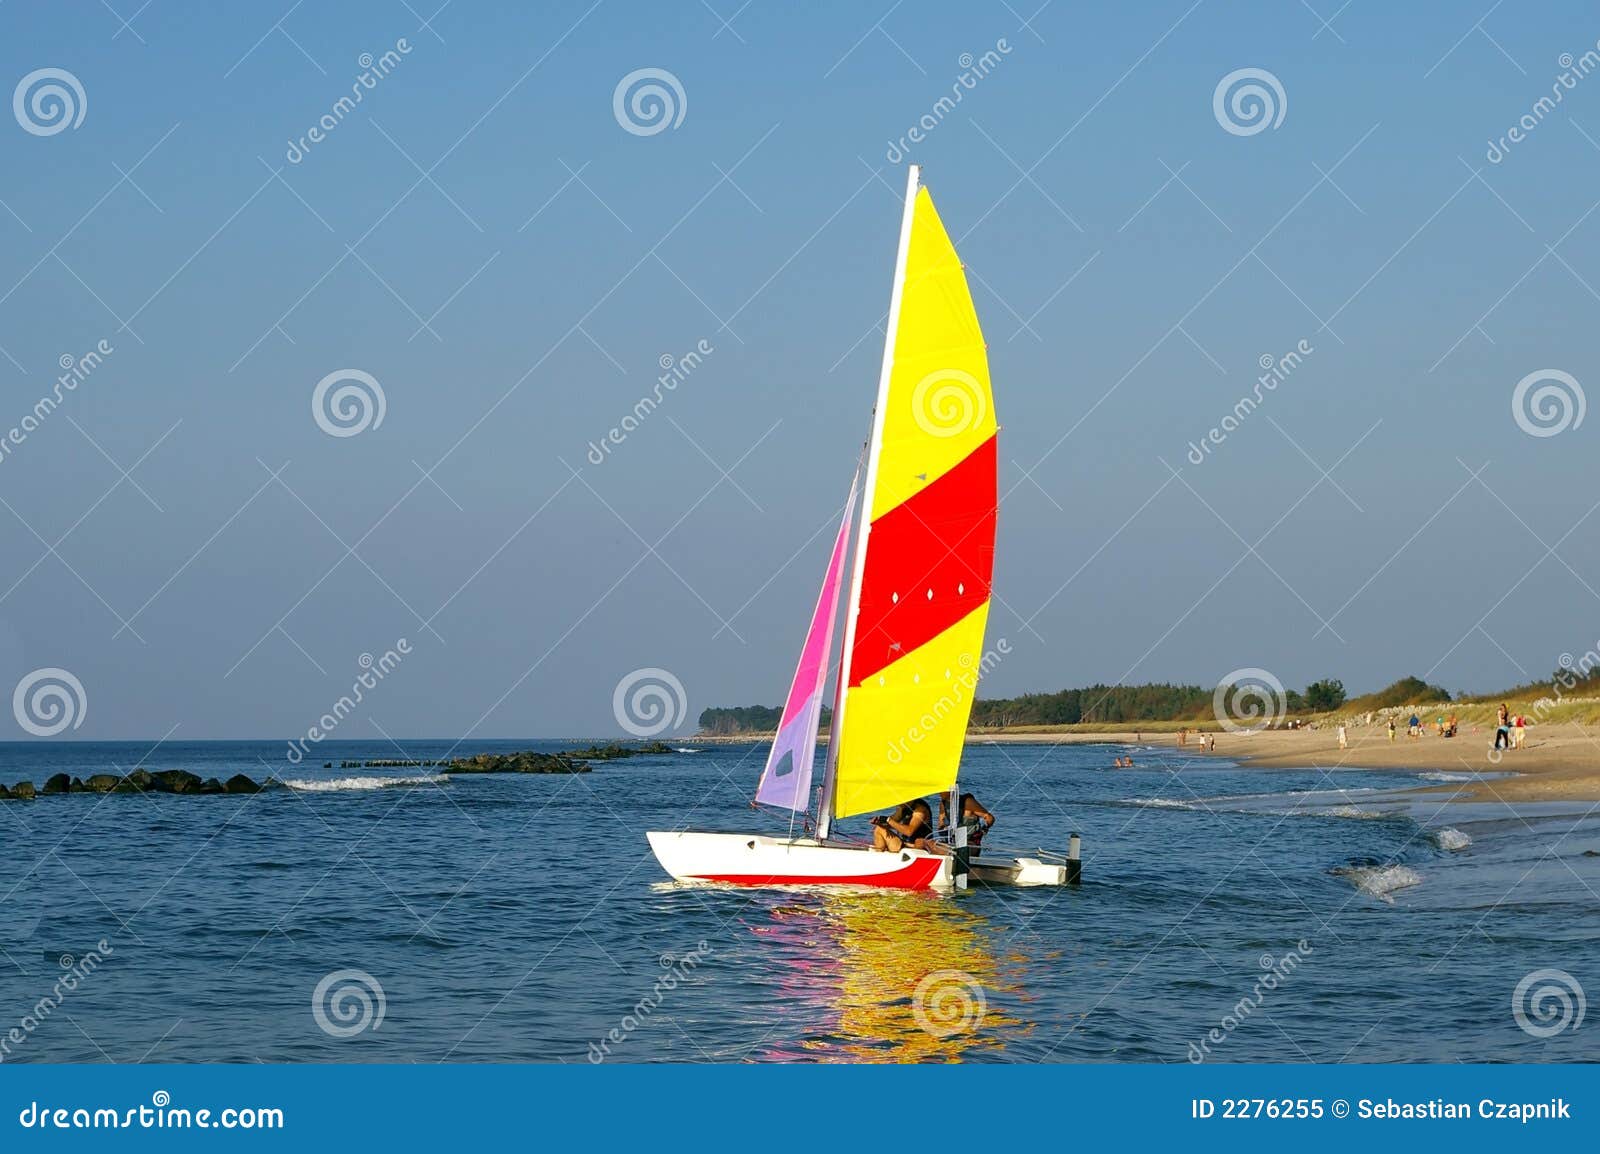 Sailing Boat At Beach. Royalty Free Stock Photo - Image: 2276255